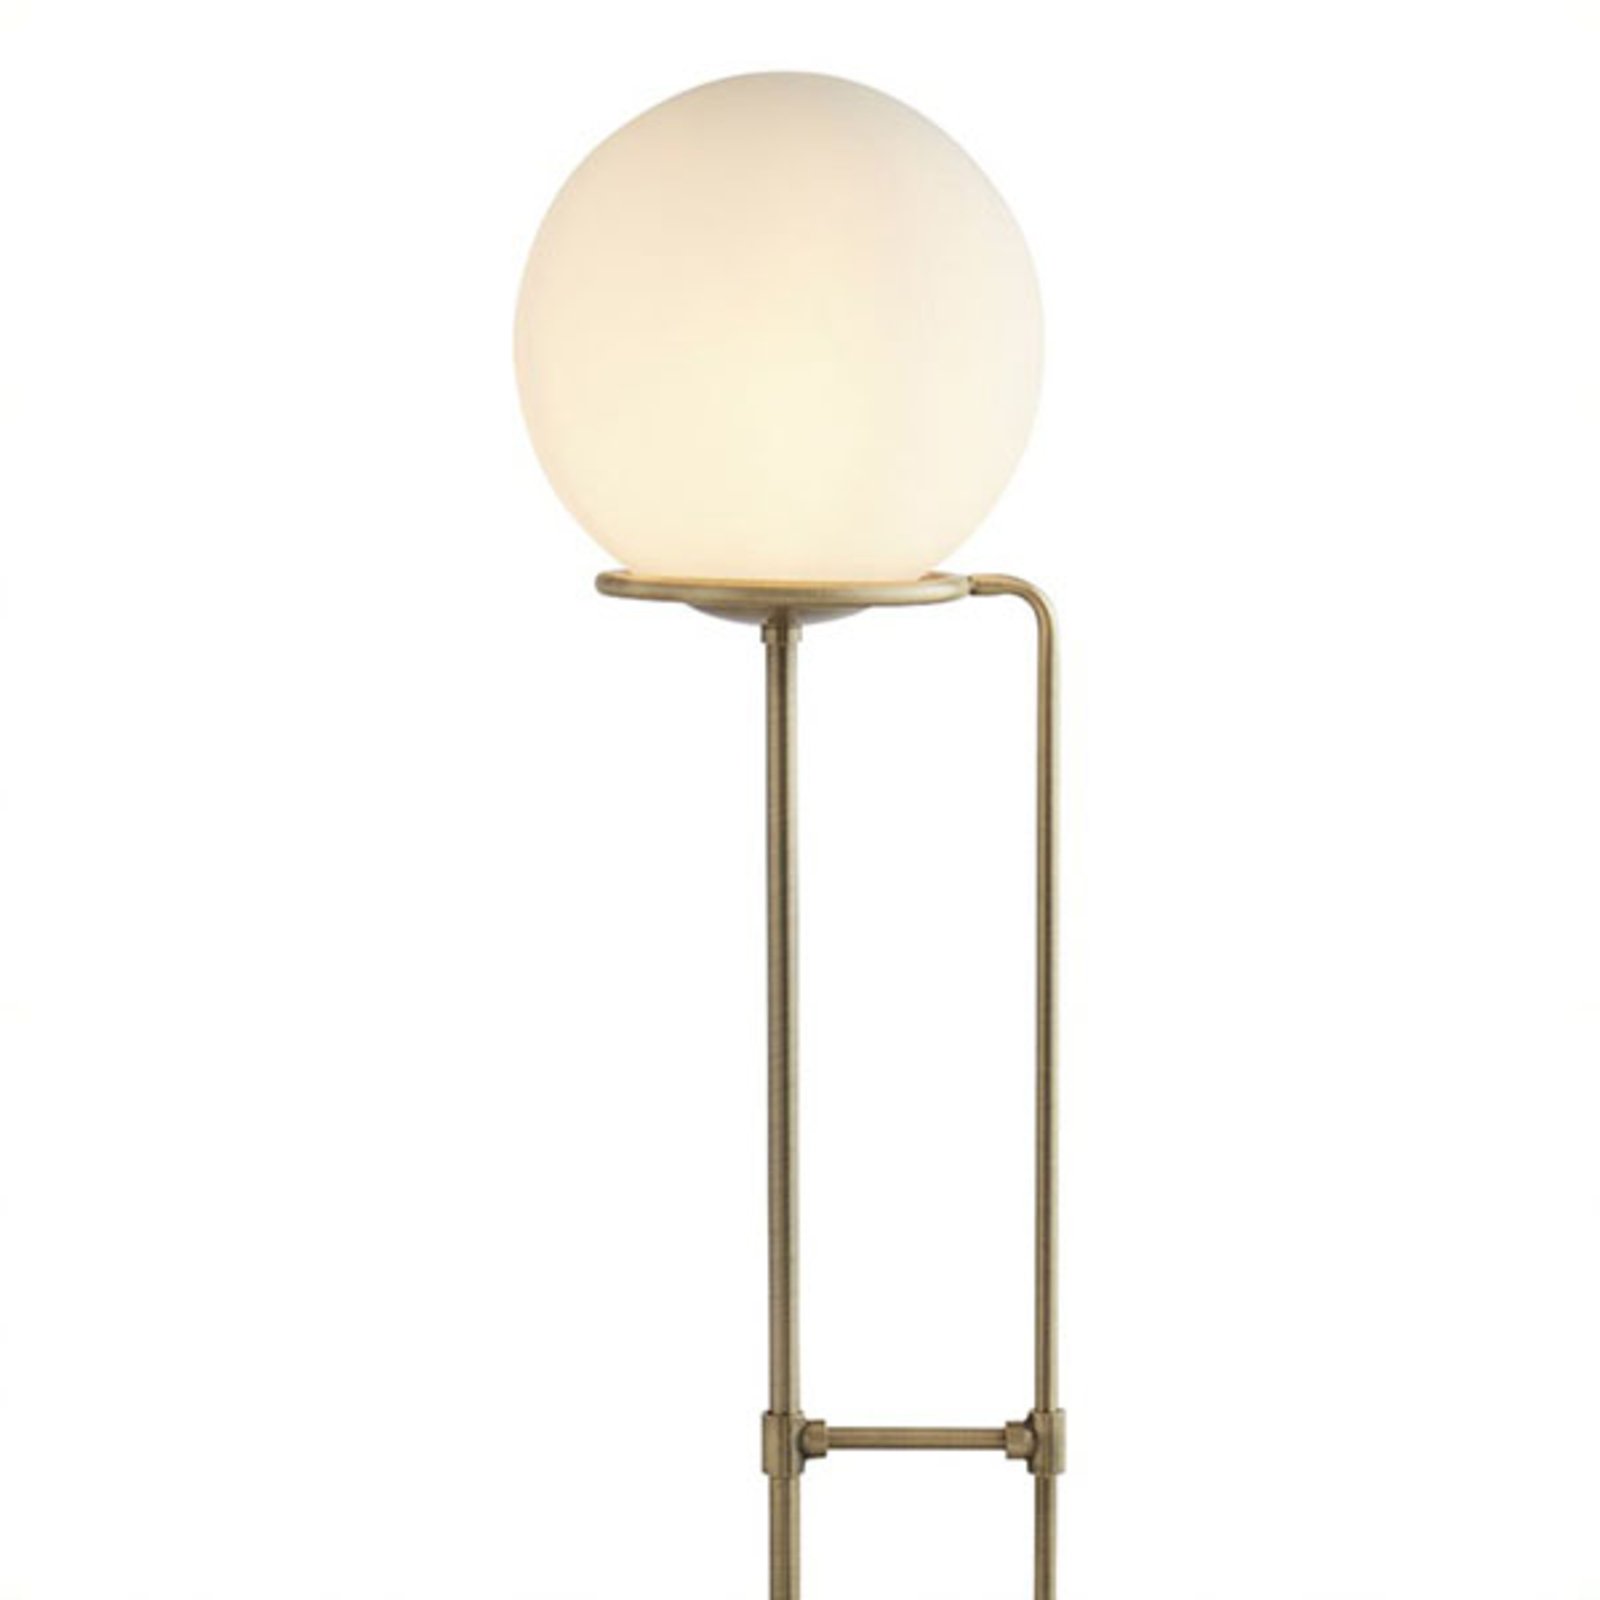 Lampa podłogowa Sphere z mosiądzu, szklana kula